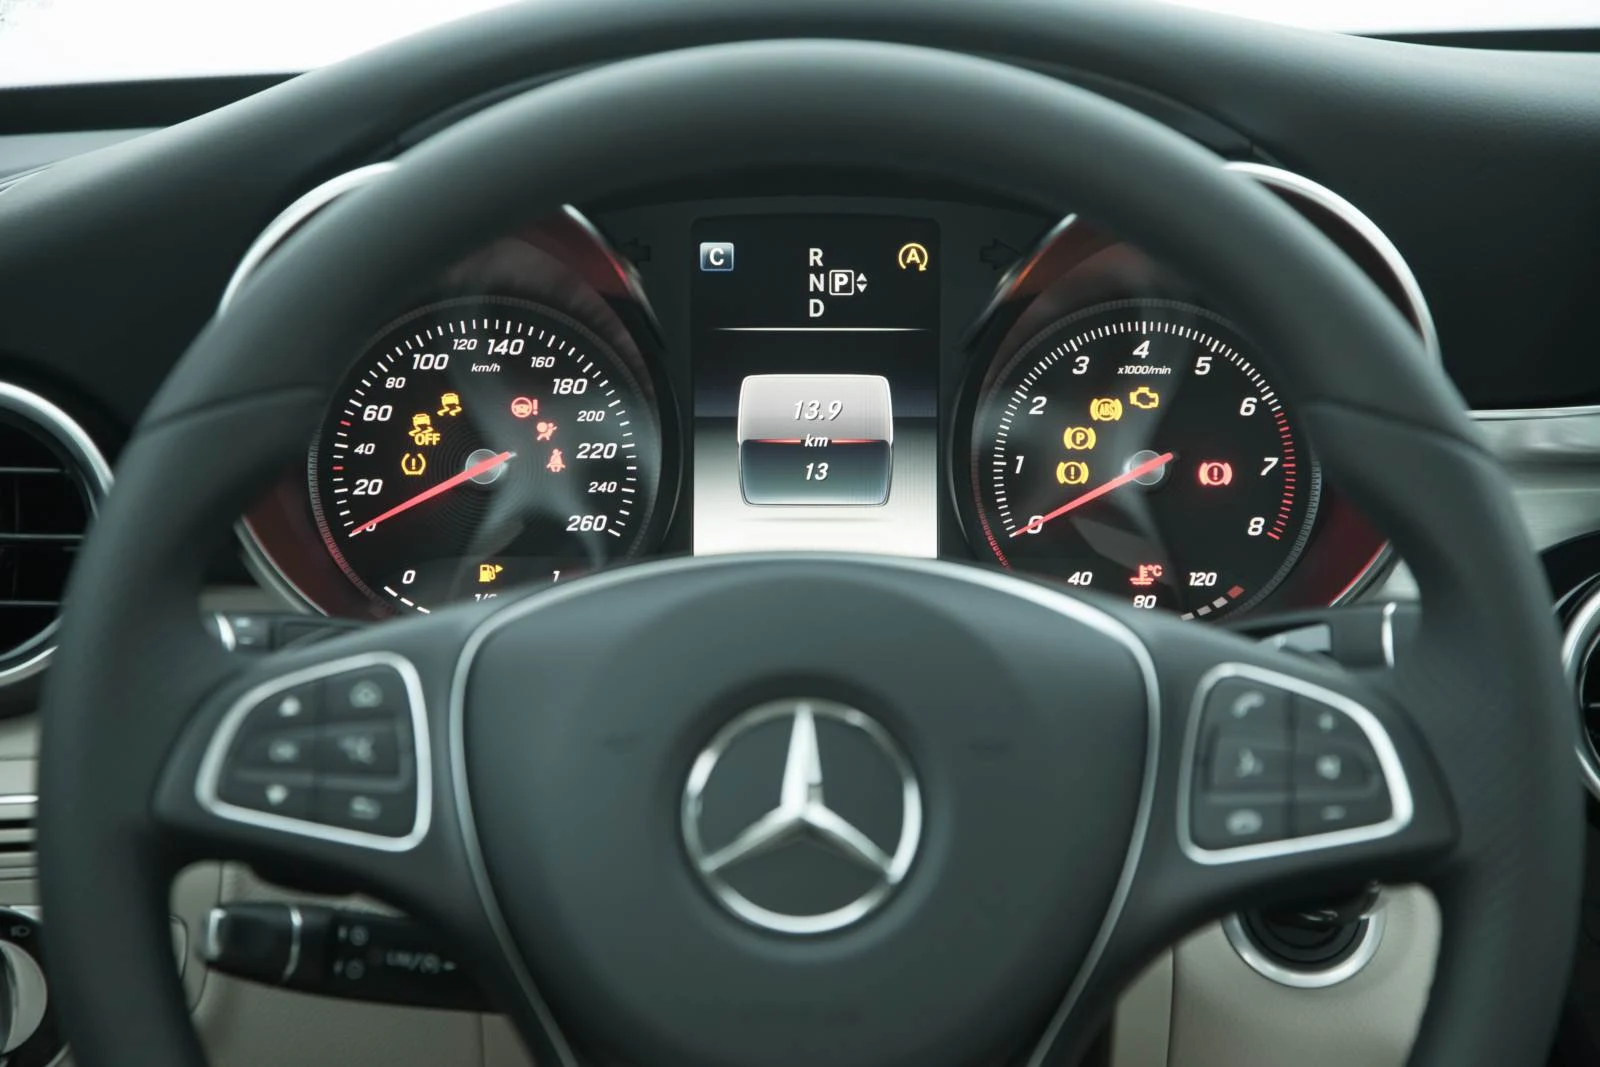 Mercedes-Benz C200 Avantgarde 2015